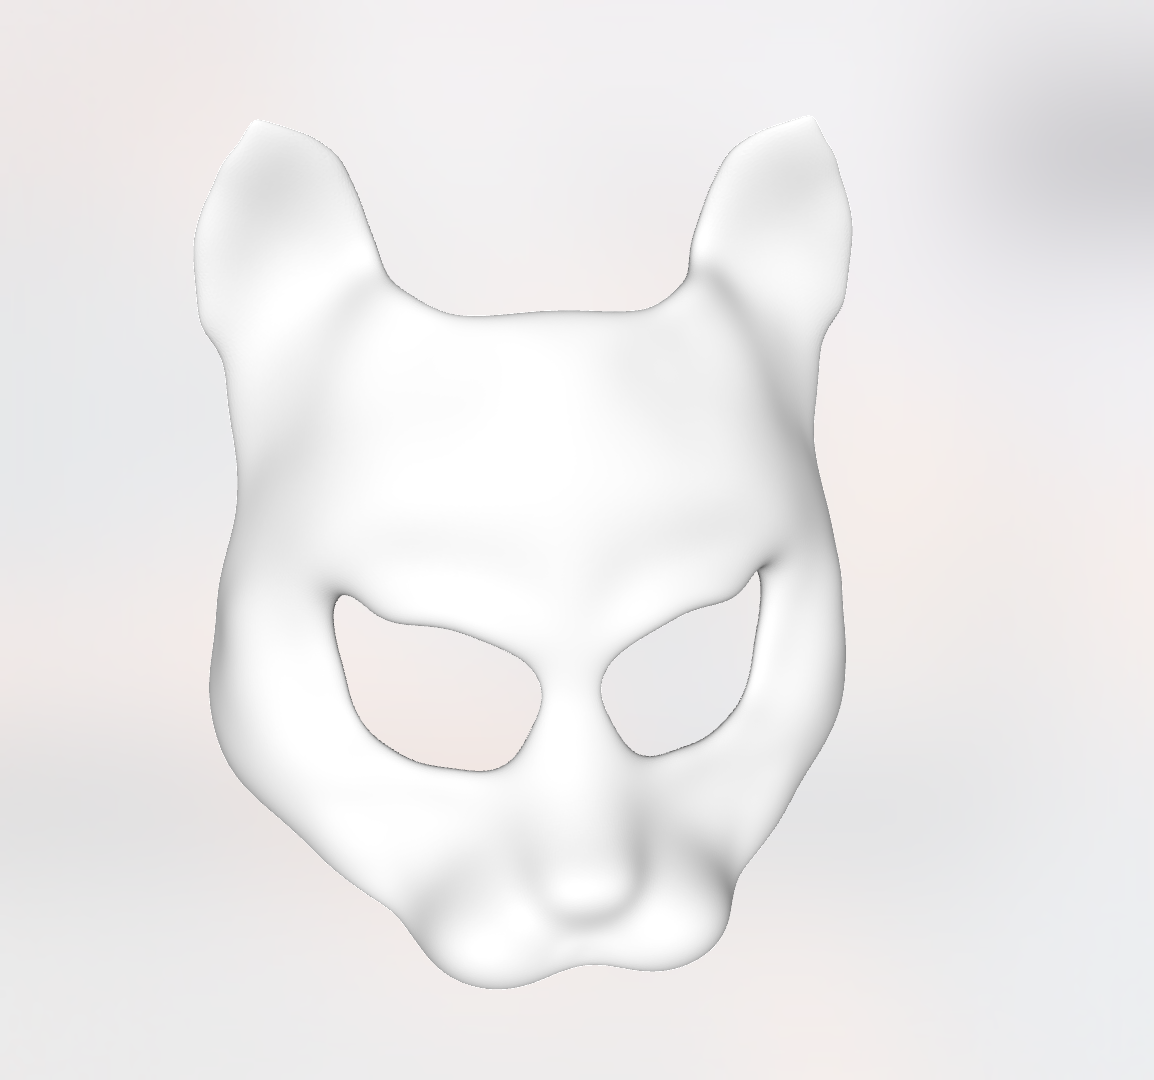 Screen Shot 2017-09-28 at 8.28.54 PM.png Download free STL file Street Cat Mask • 3D printer model, delukart